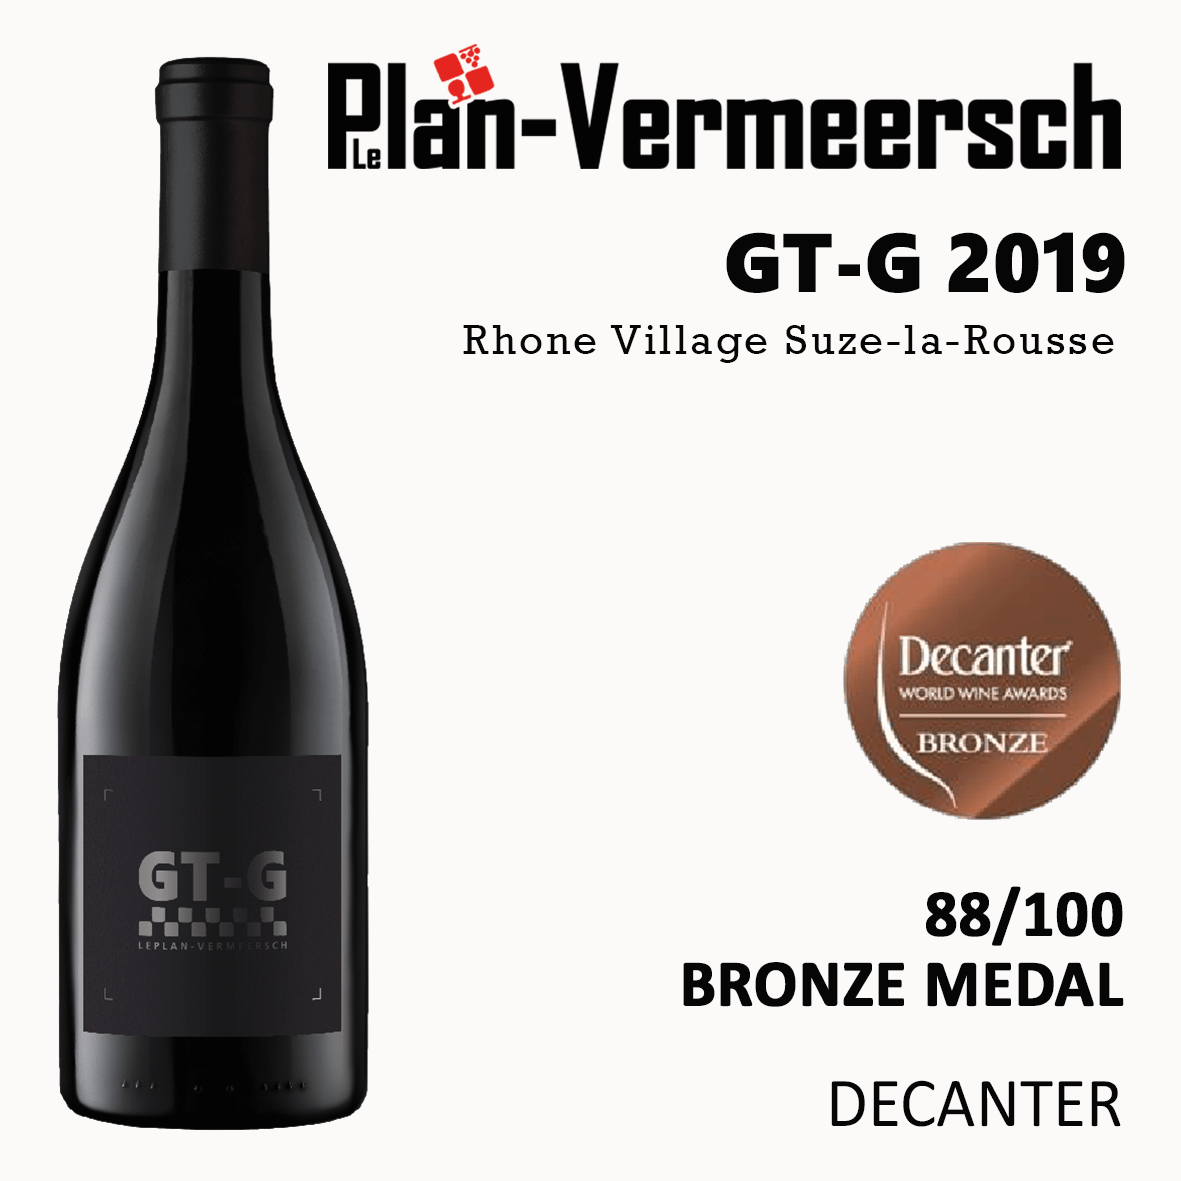 Bottle wine Grenache GT-Grenache bronze medal decanter LePlan-Vermeersch